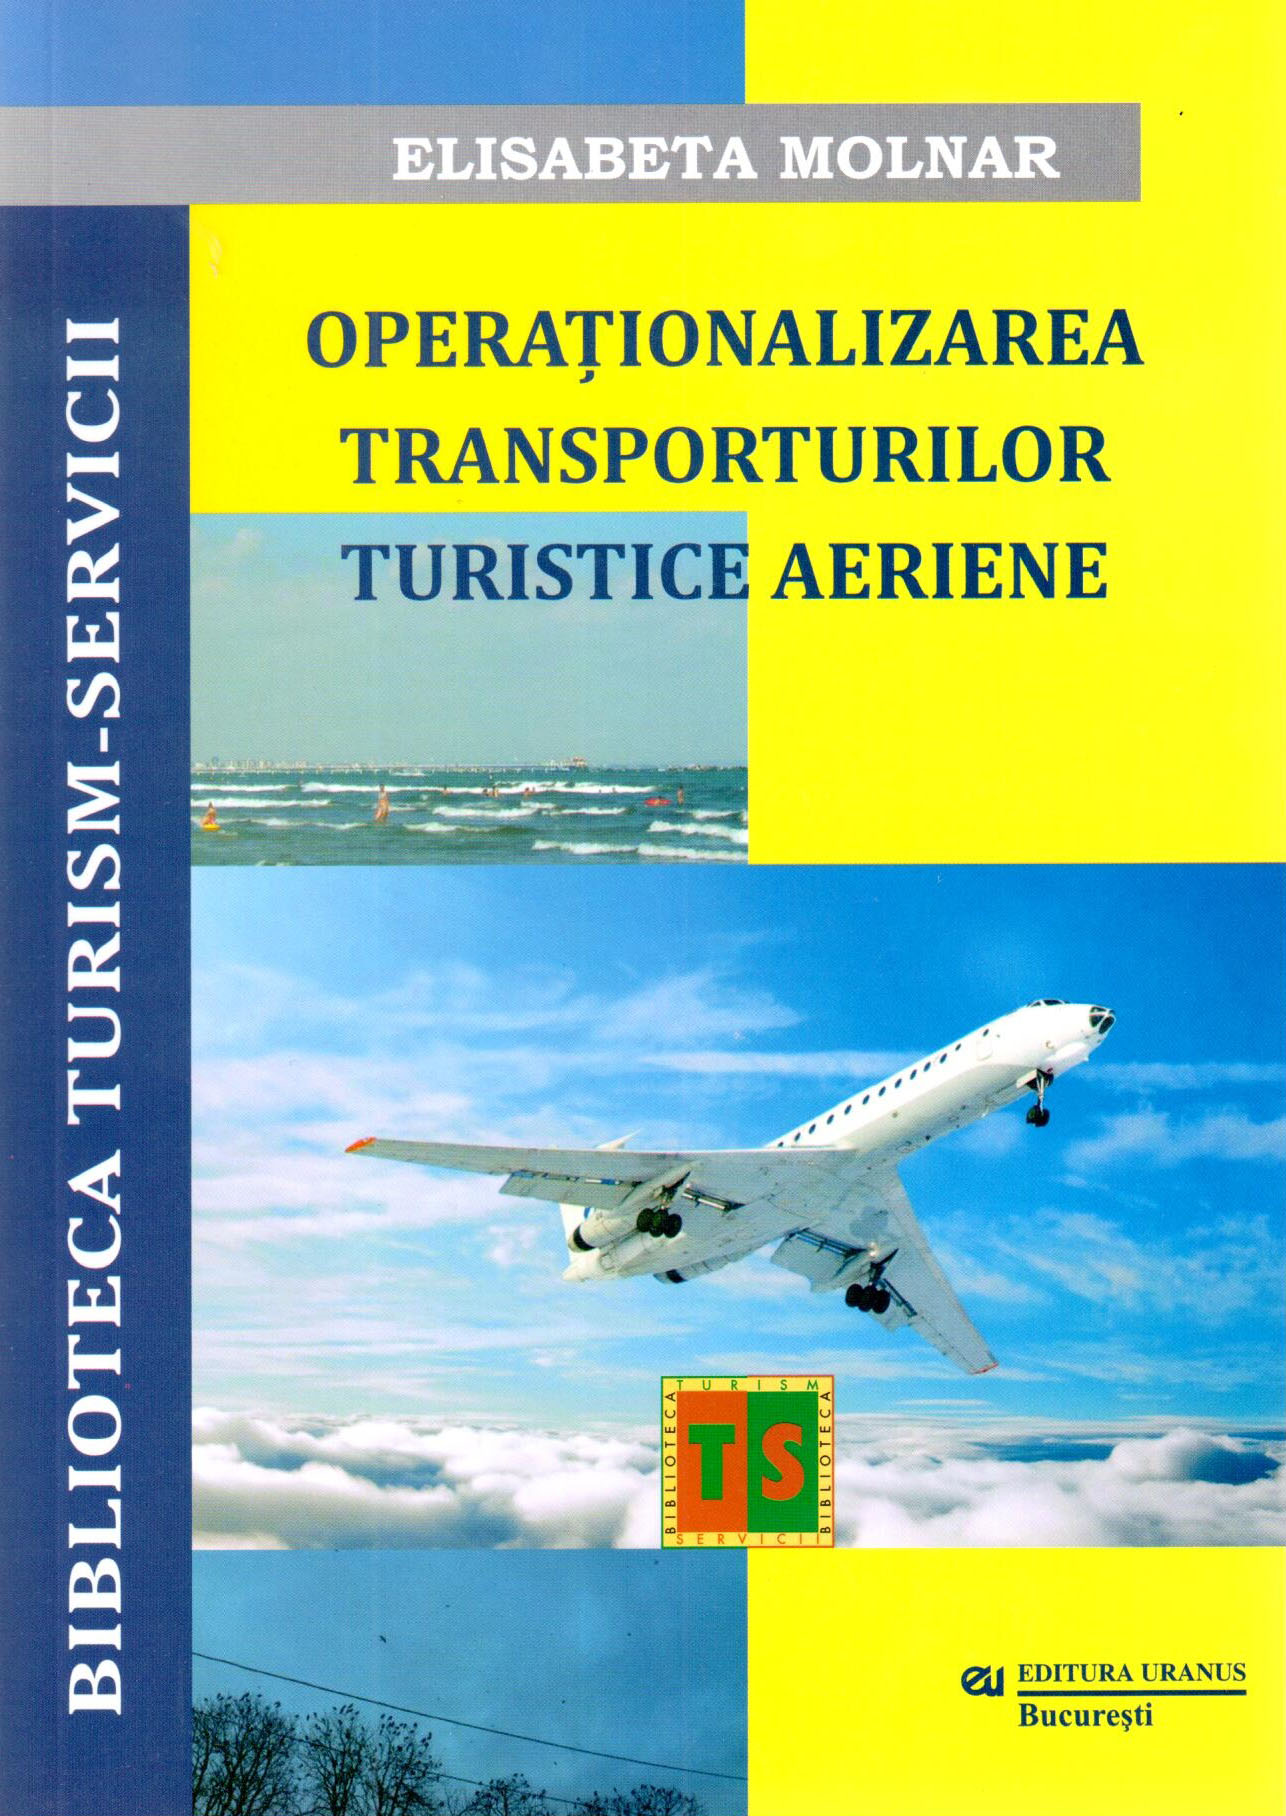 PDF Operationalizarea Transporturilor Turistice Aeriene | Elisabeta Molnar carturesti.ro Business si economie